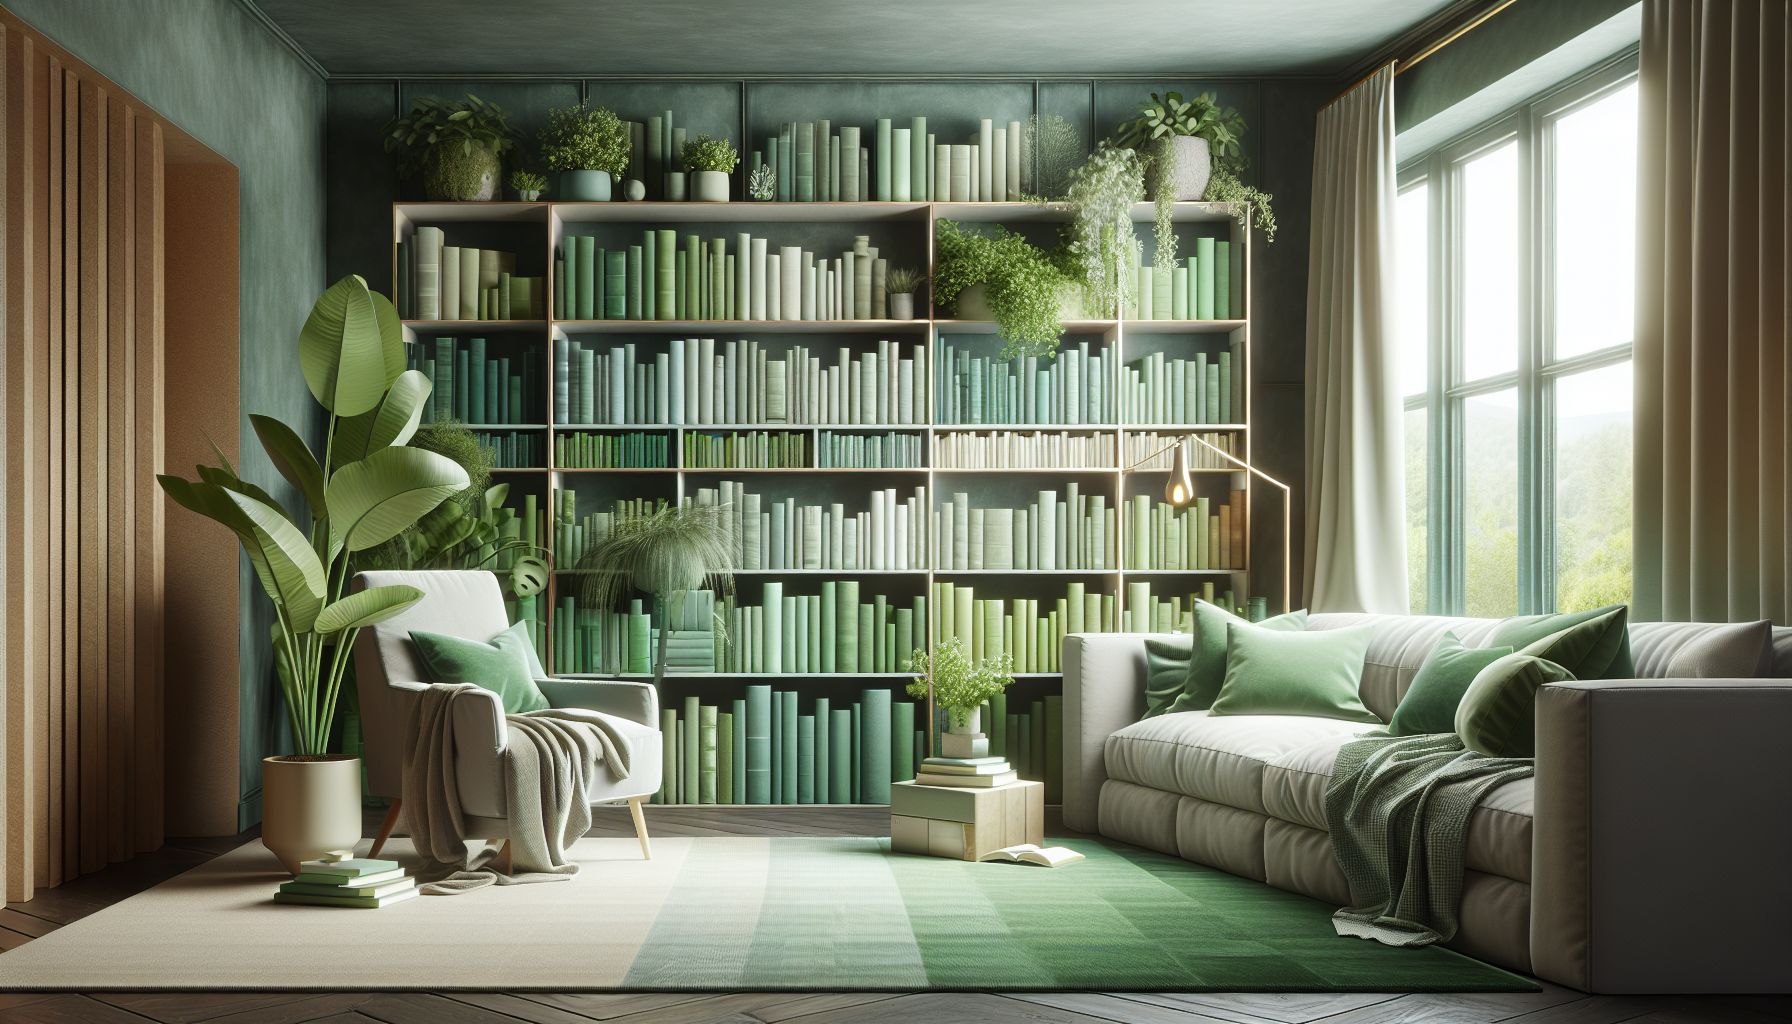 Wohnzimmer in Grün: Ideen und Inspiration- Ergänze mit grünen Büchern im Regal